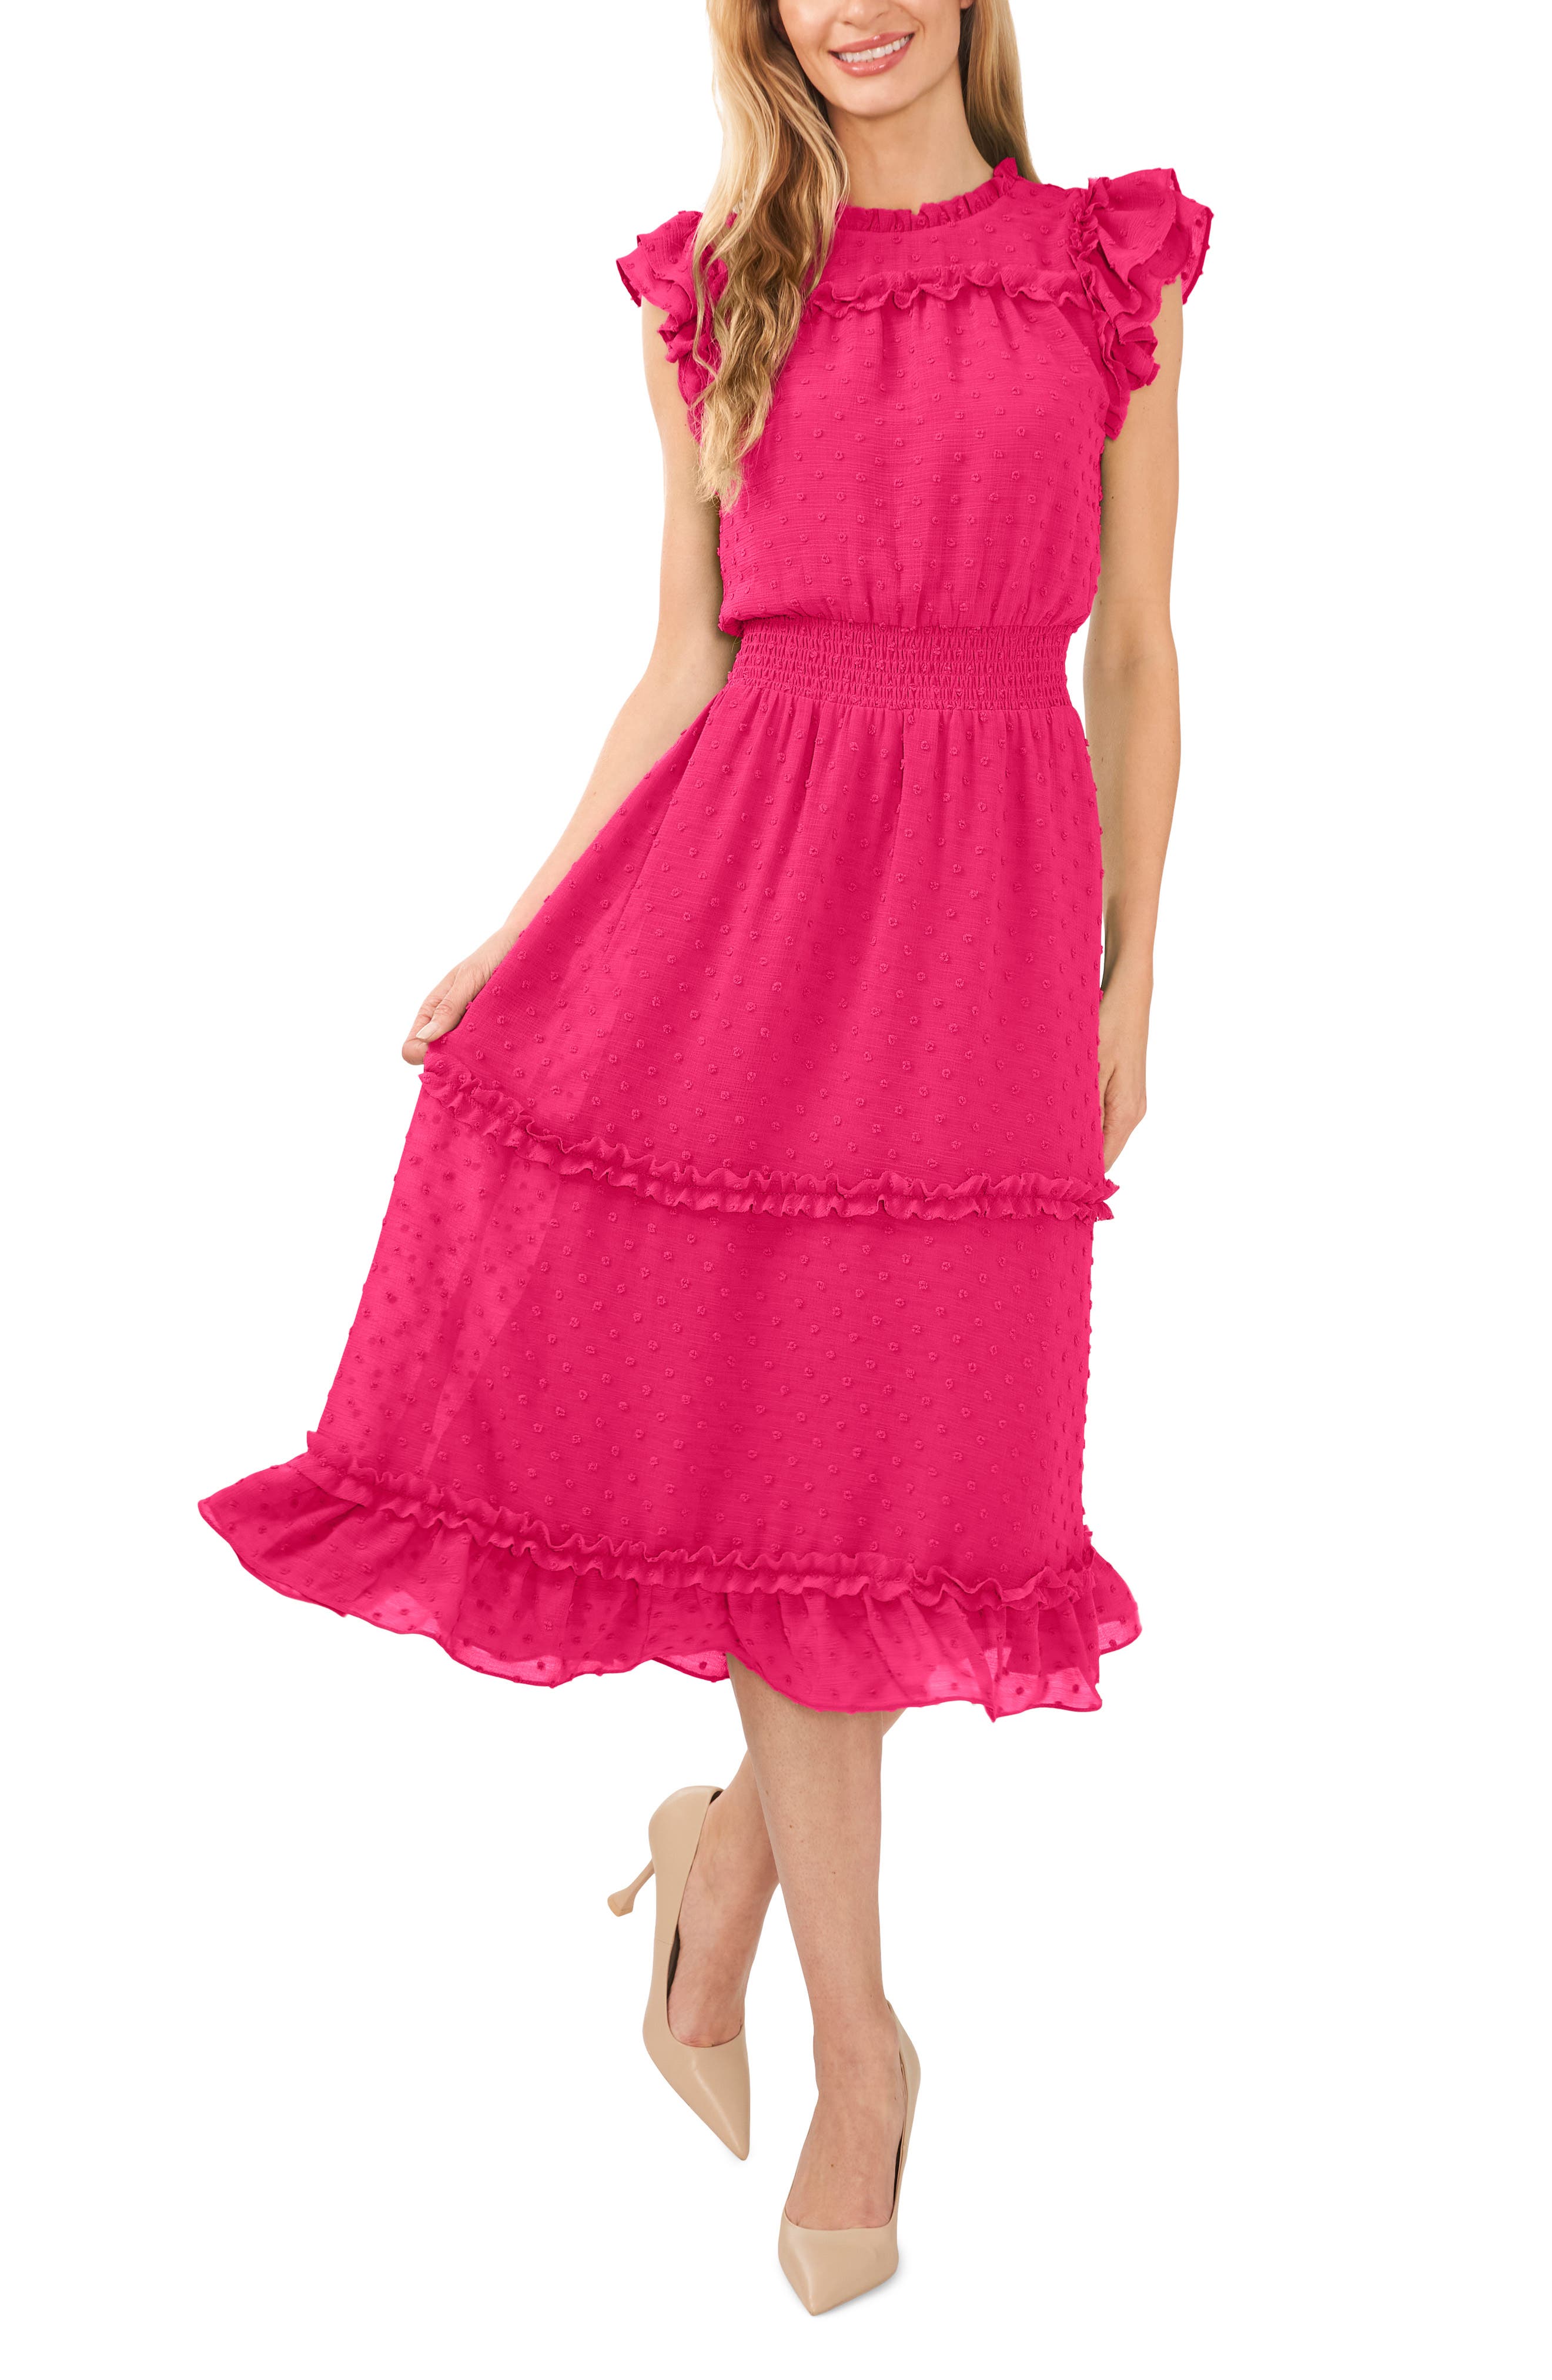 women’s pink dress